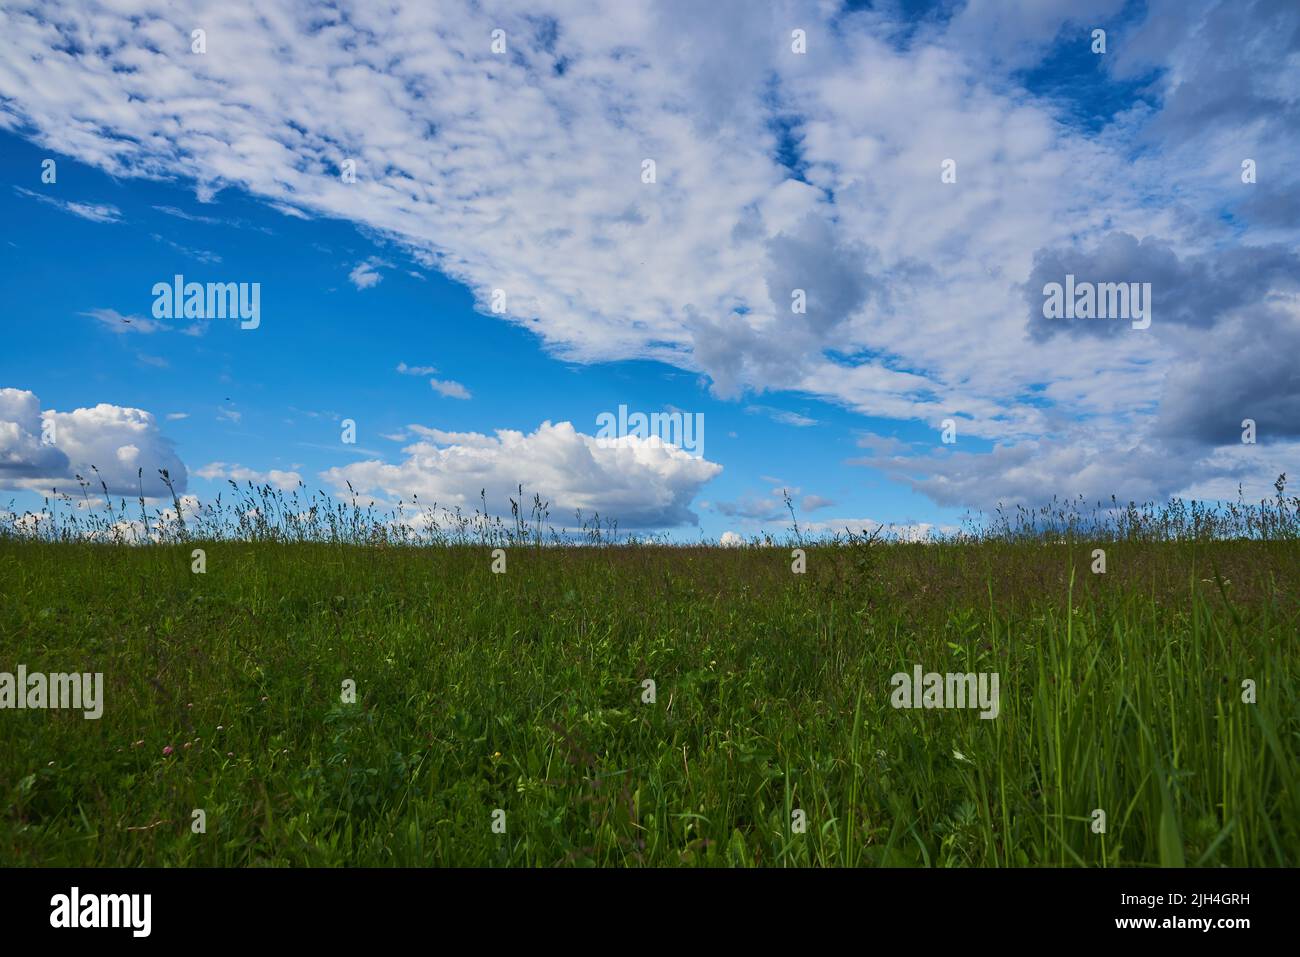 Un prado verde bajo un cielo azul brillante con gruesas nubes blancas. Paisaje de verano. Foto de stock